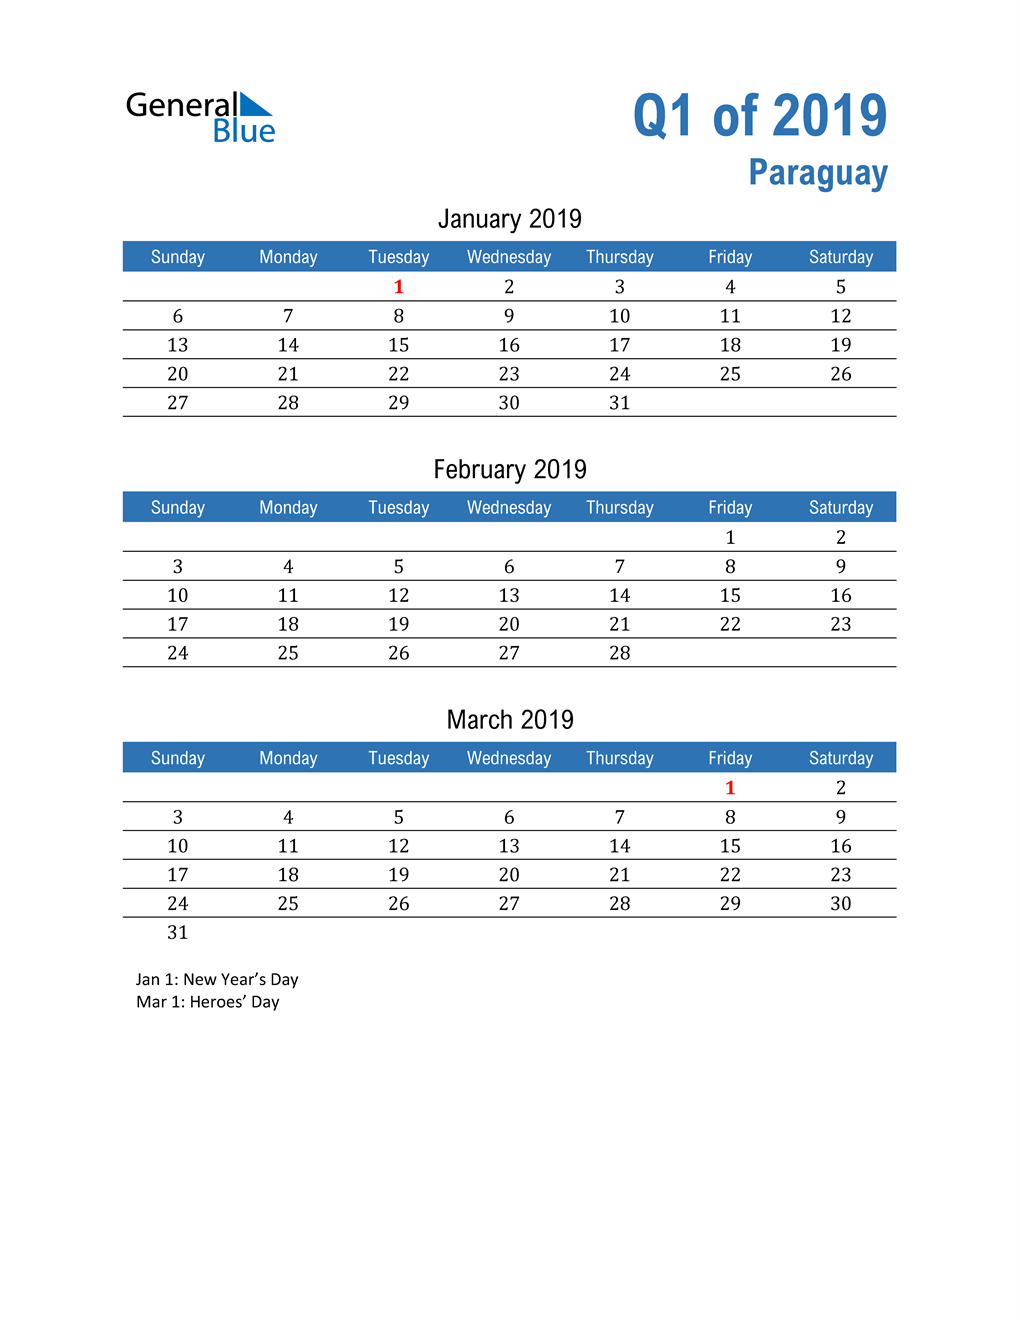  Paraguay 2019 Quarterly Calendar 